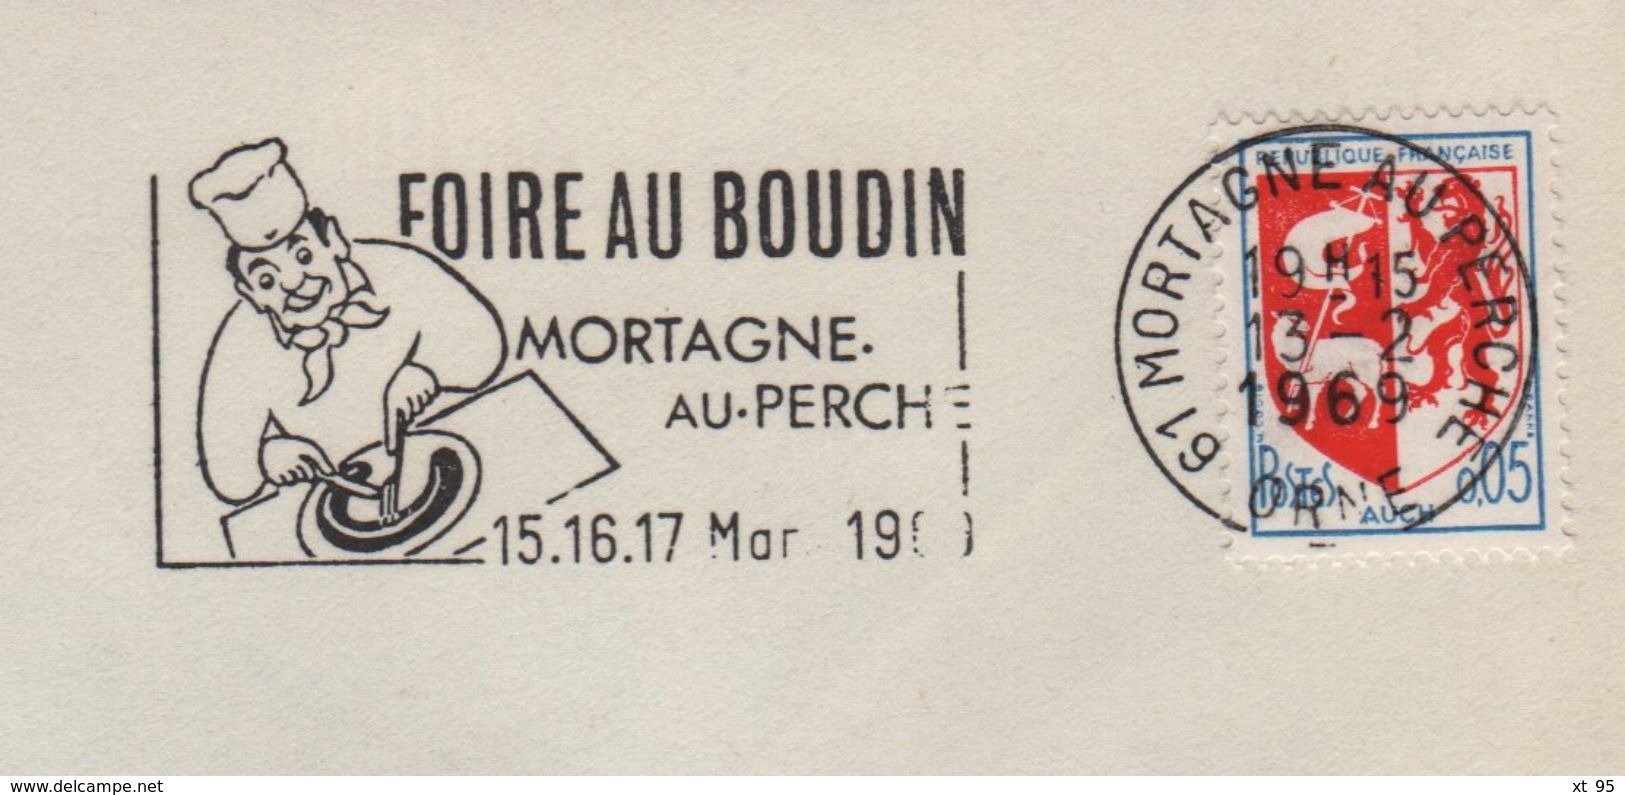 Mortagne Au Perche - Orne - Foire Au Boudin - 1969 - Oblitérations Mécaniques (flammes)